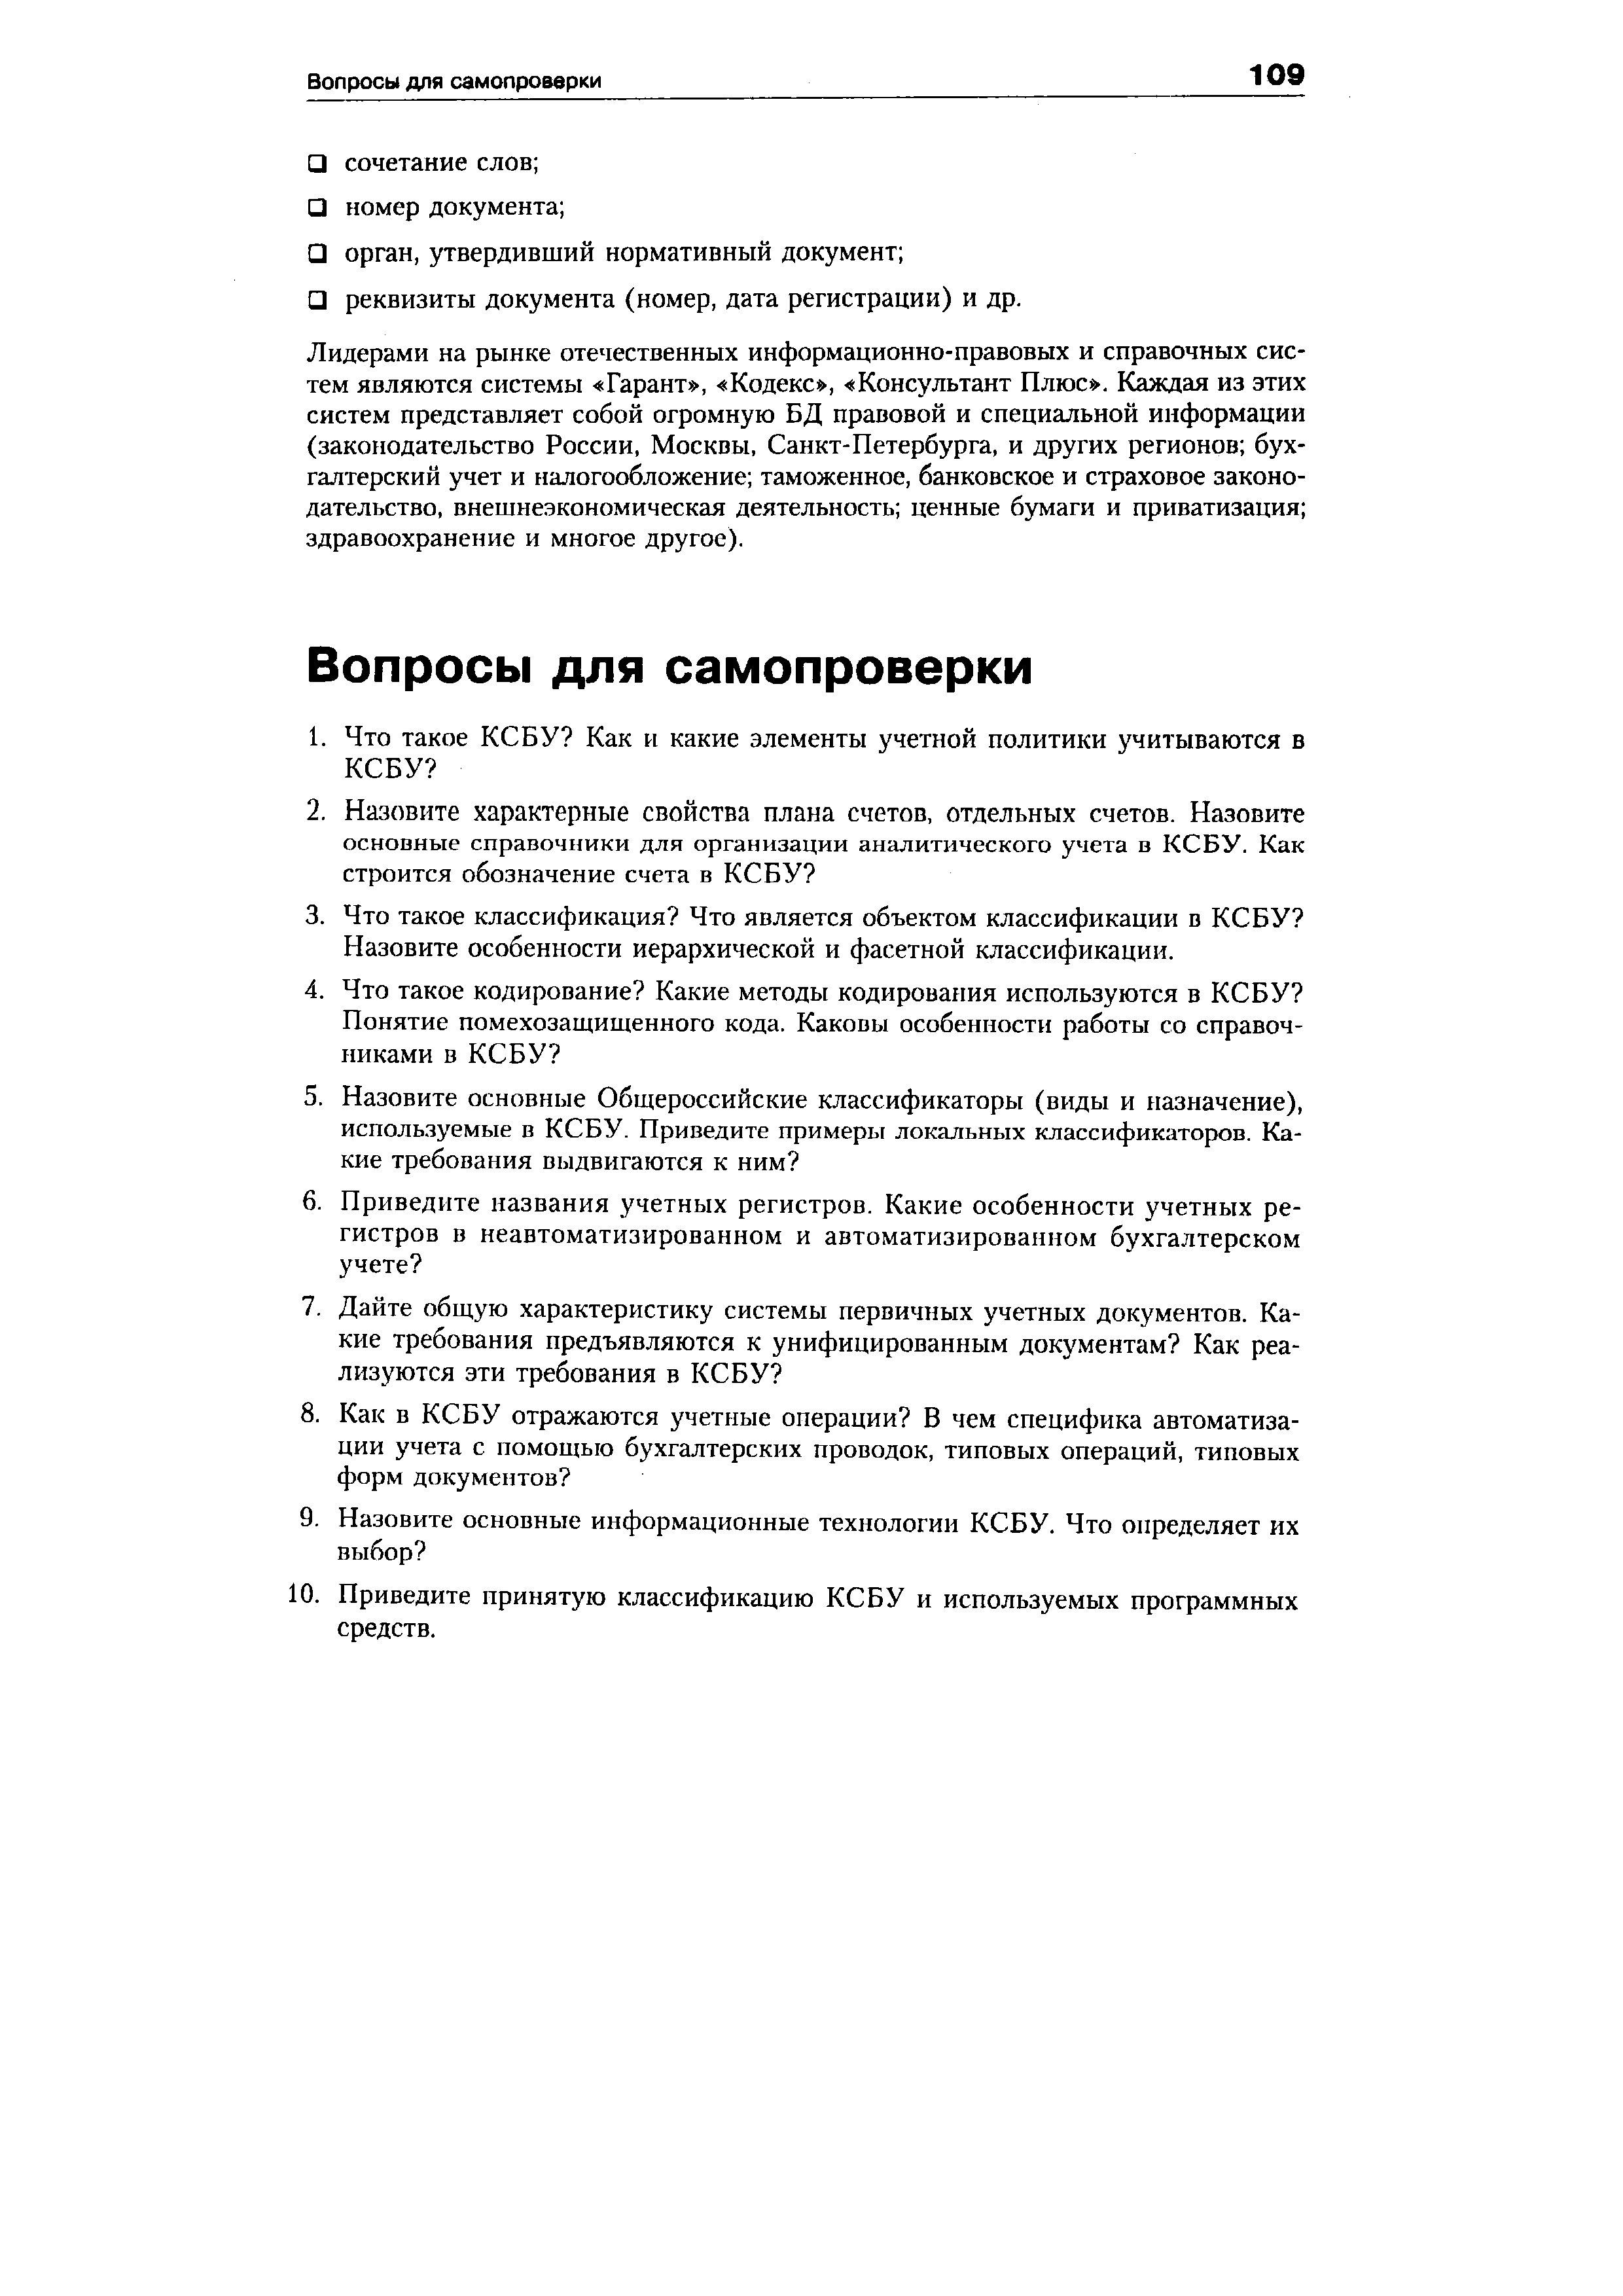 О реквизиты документа (номер, дата регистрации) и др.
